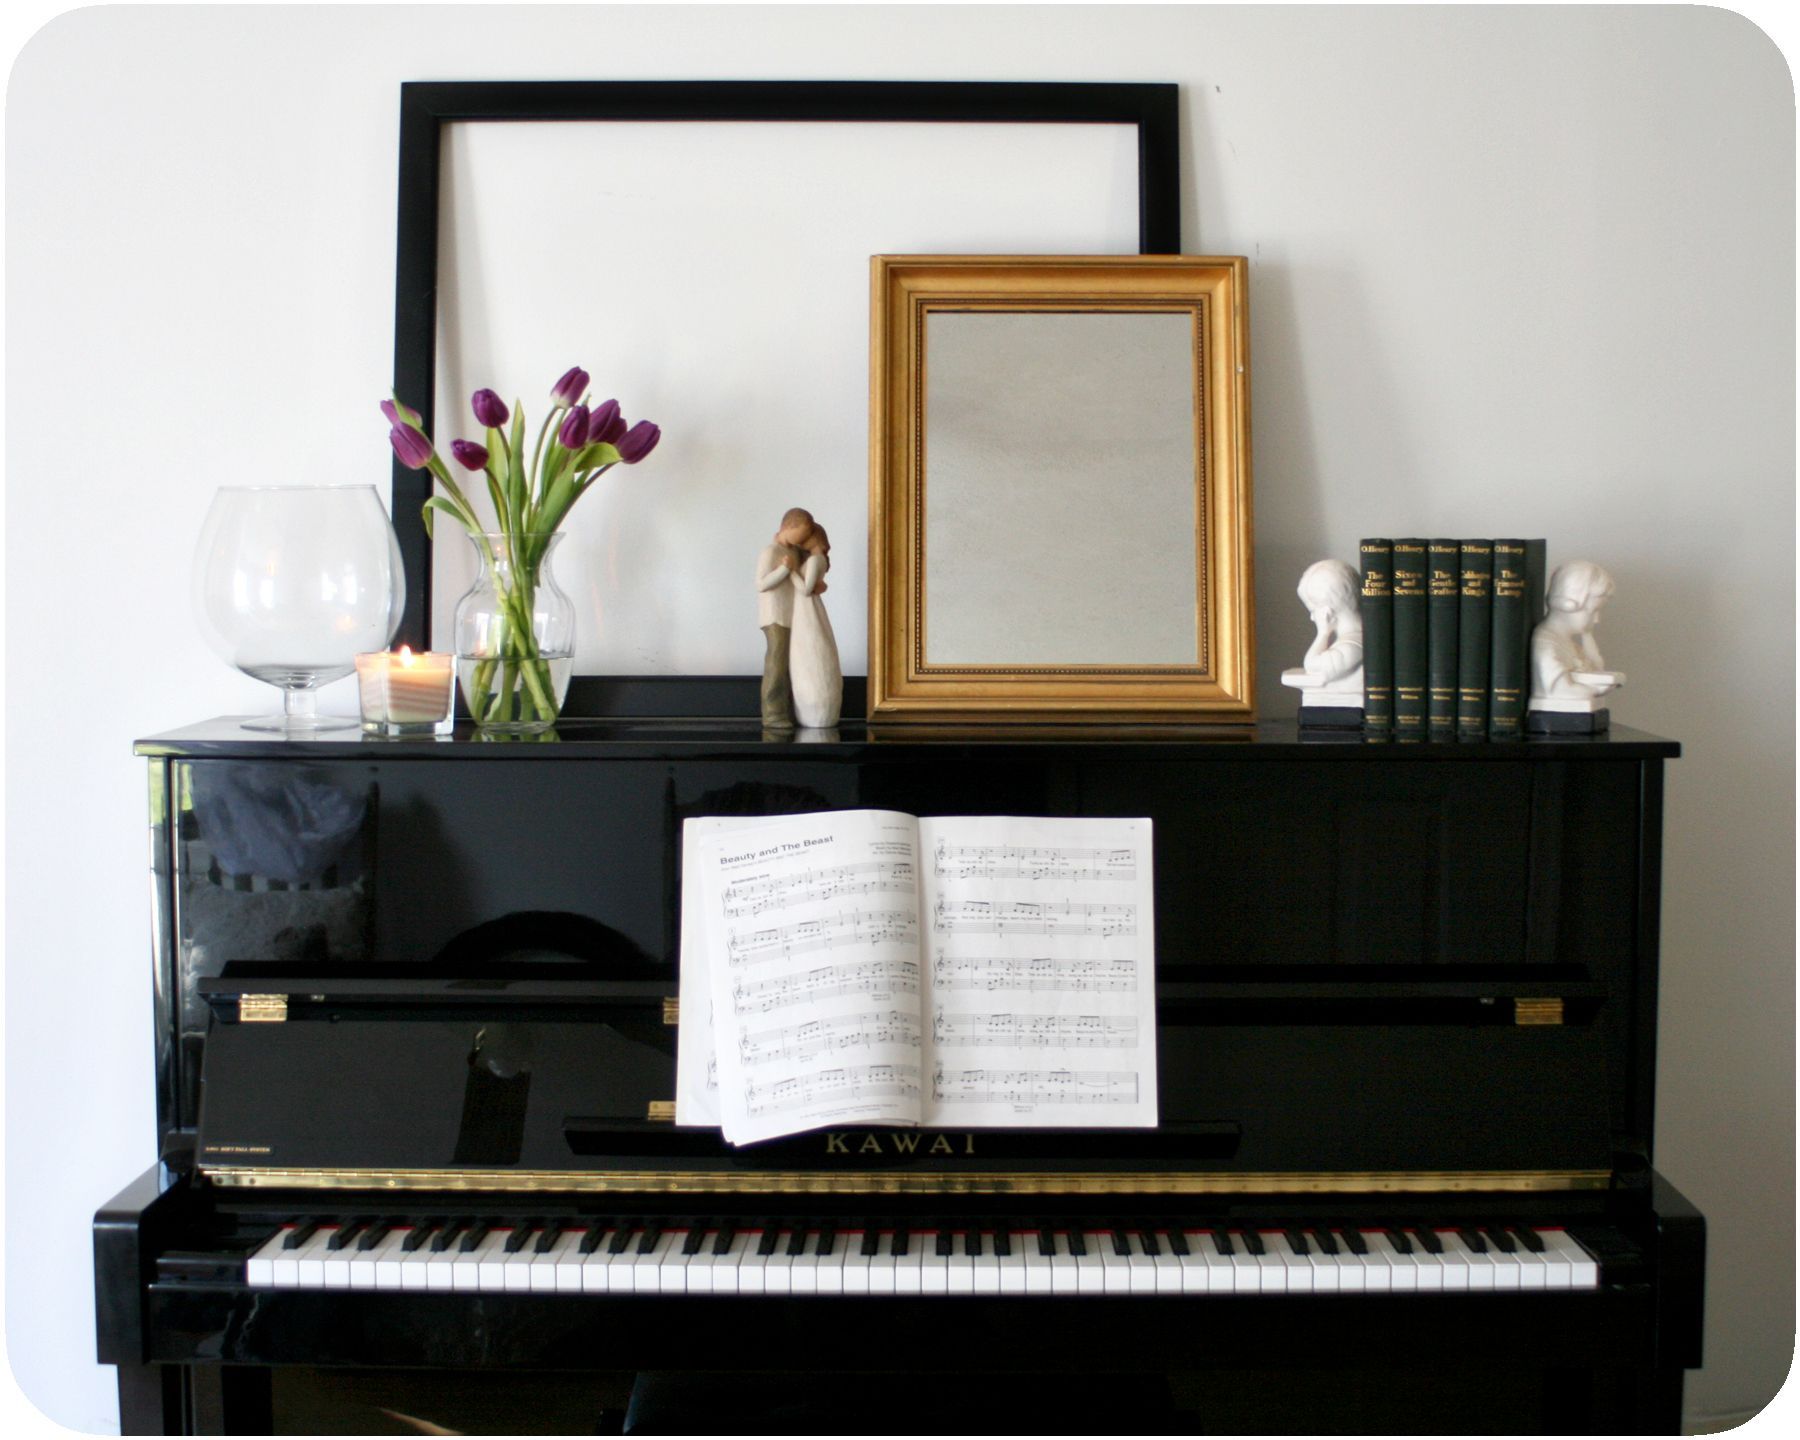 ایده برای قرار دادن پیانو در دکوراسیون خانه